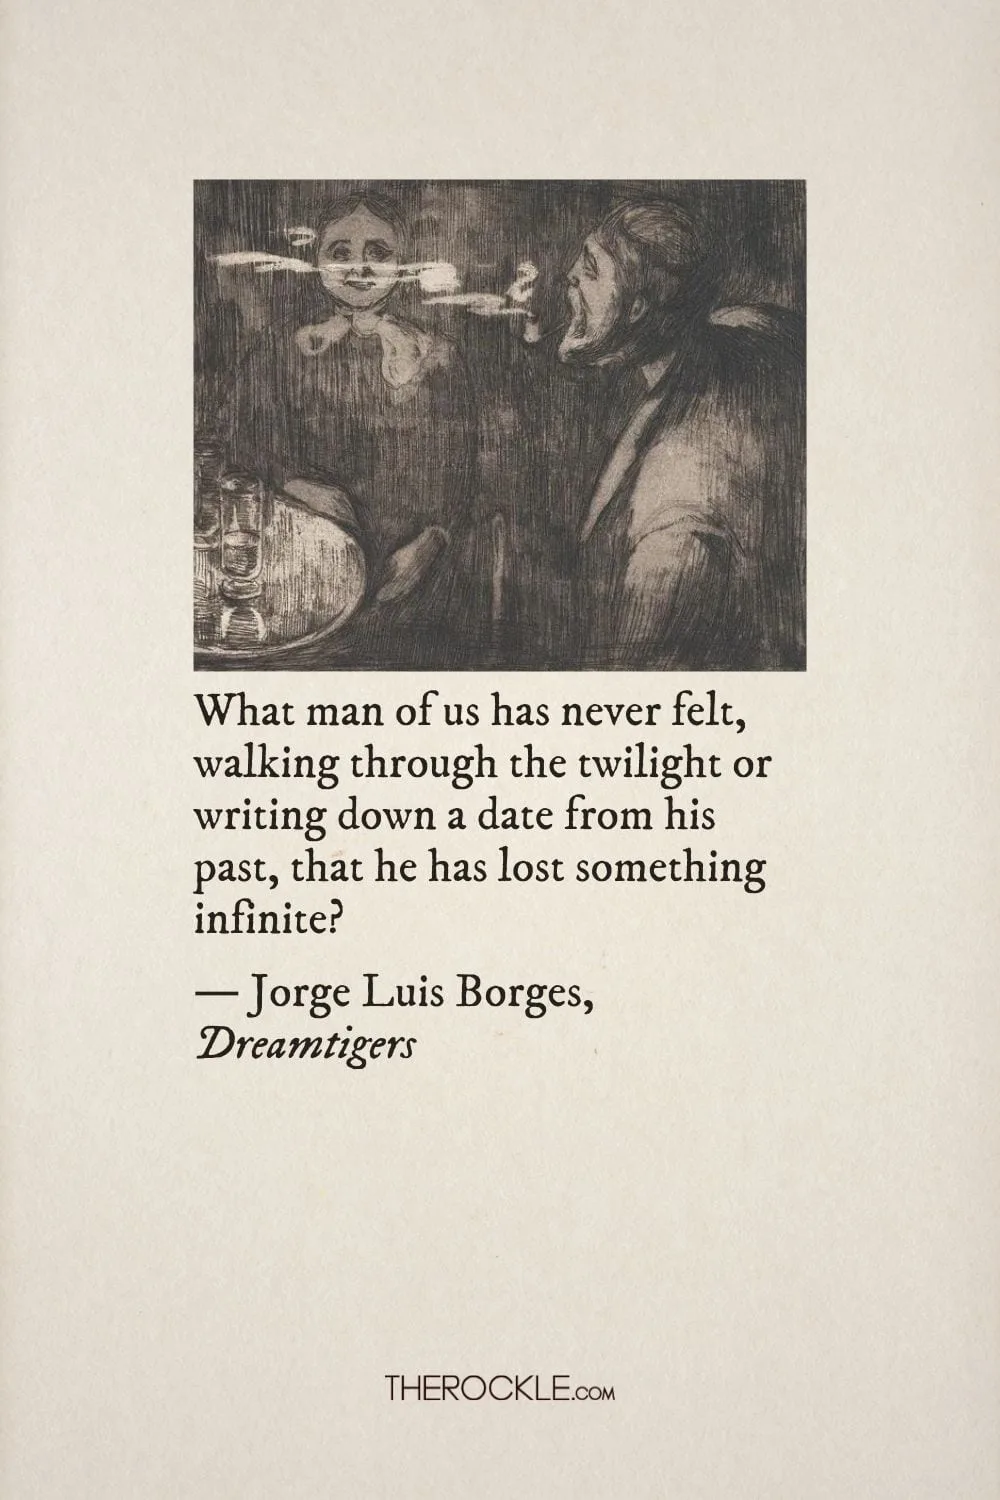 Jorge Luis Borges on nostalgia